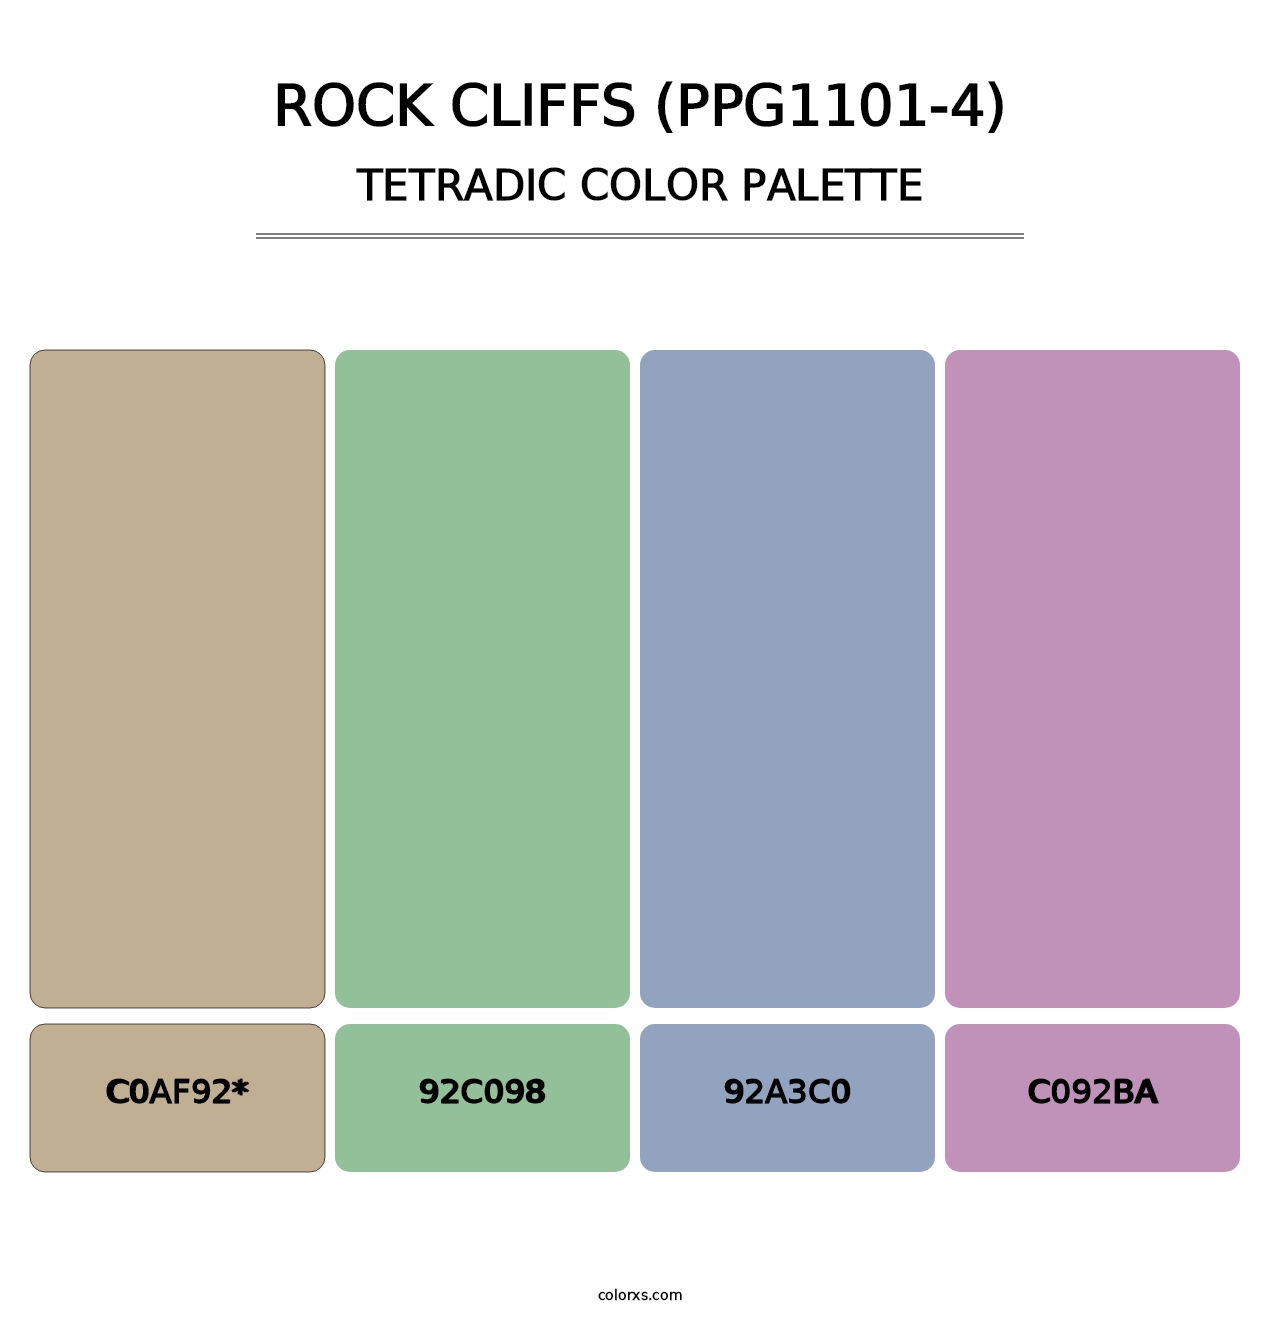 Rock Cliffs (PPG1101-4) - Tetradic Color Palette